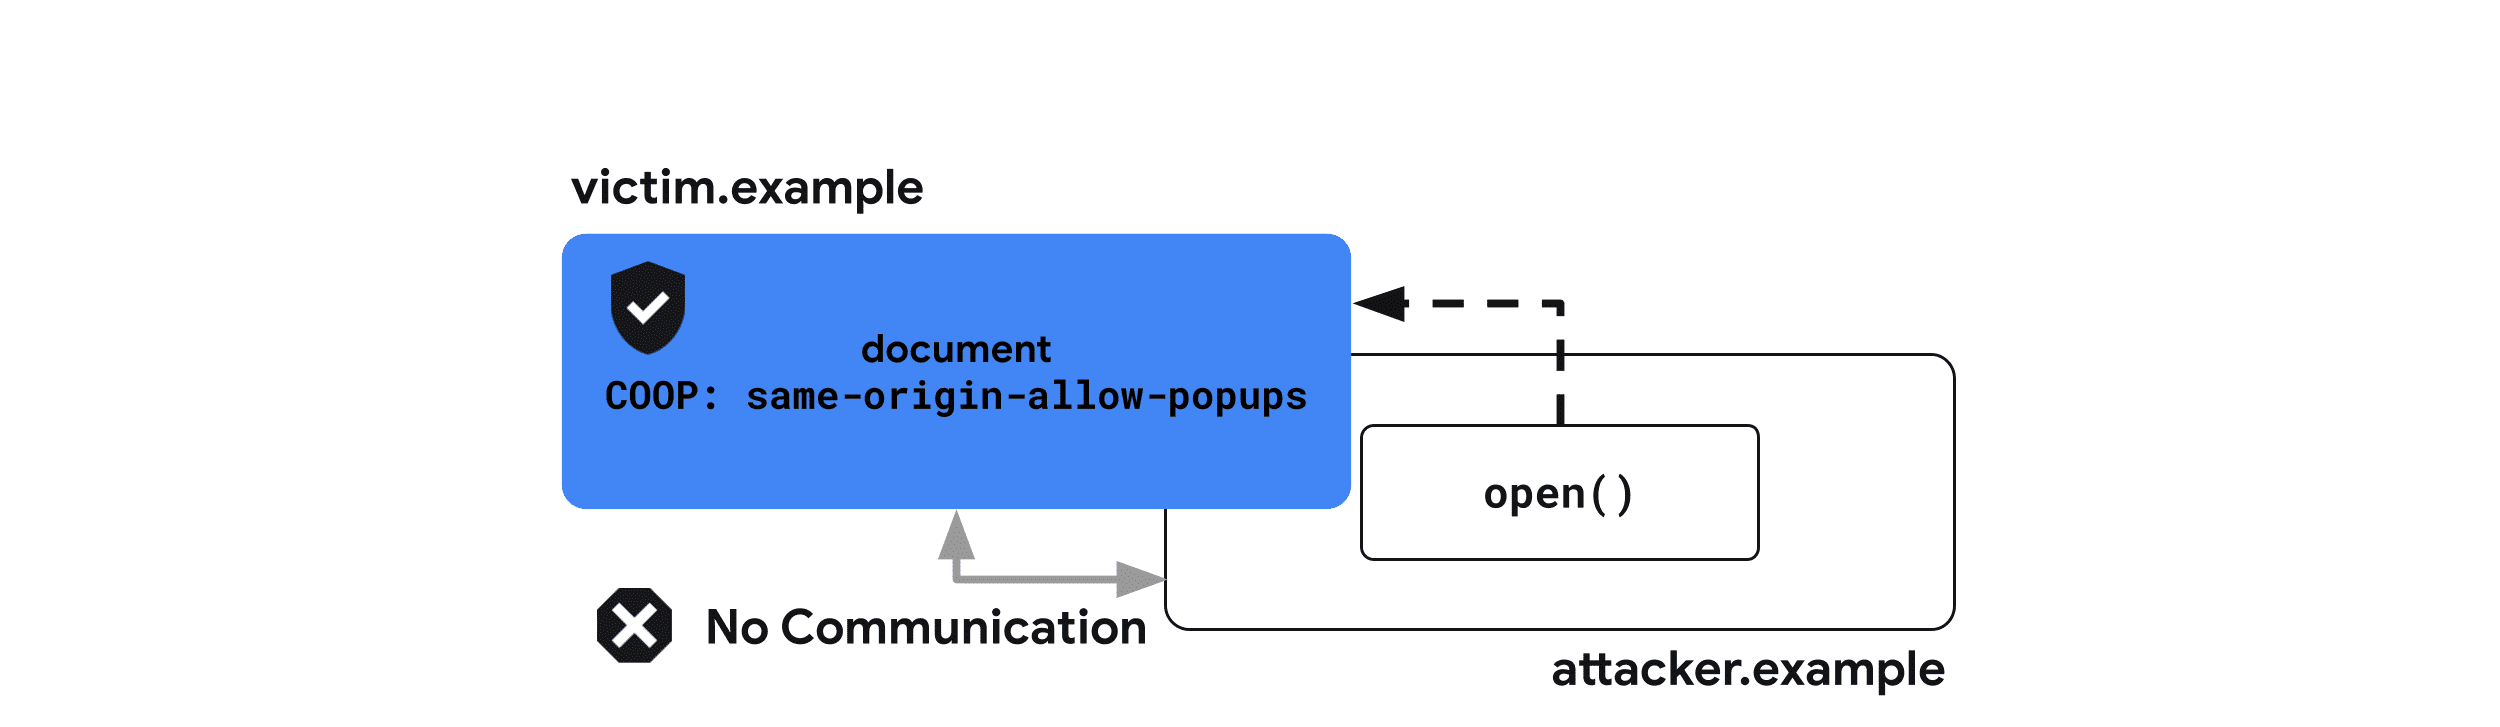 Cross-Origin-Opener-Policy: Aynı-origin-allow-popups